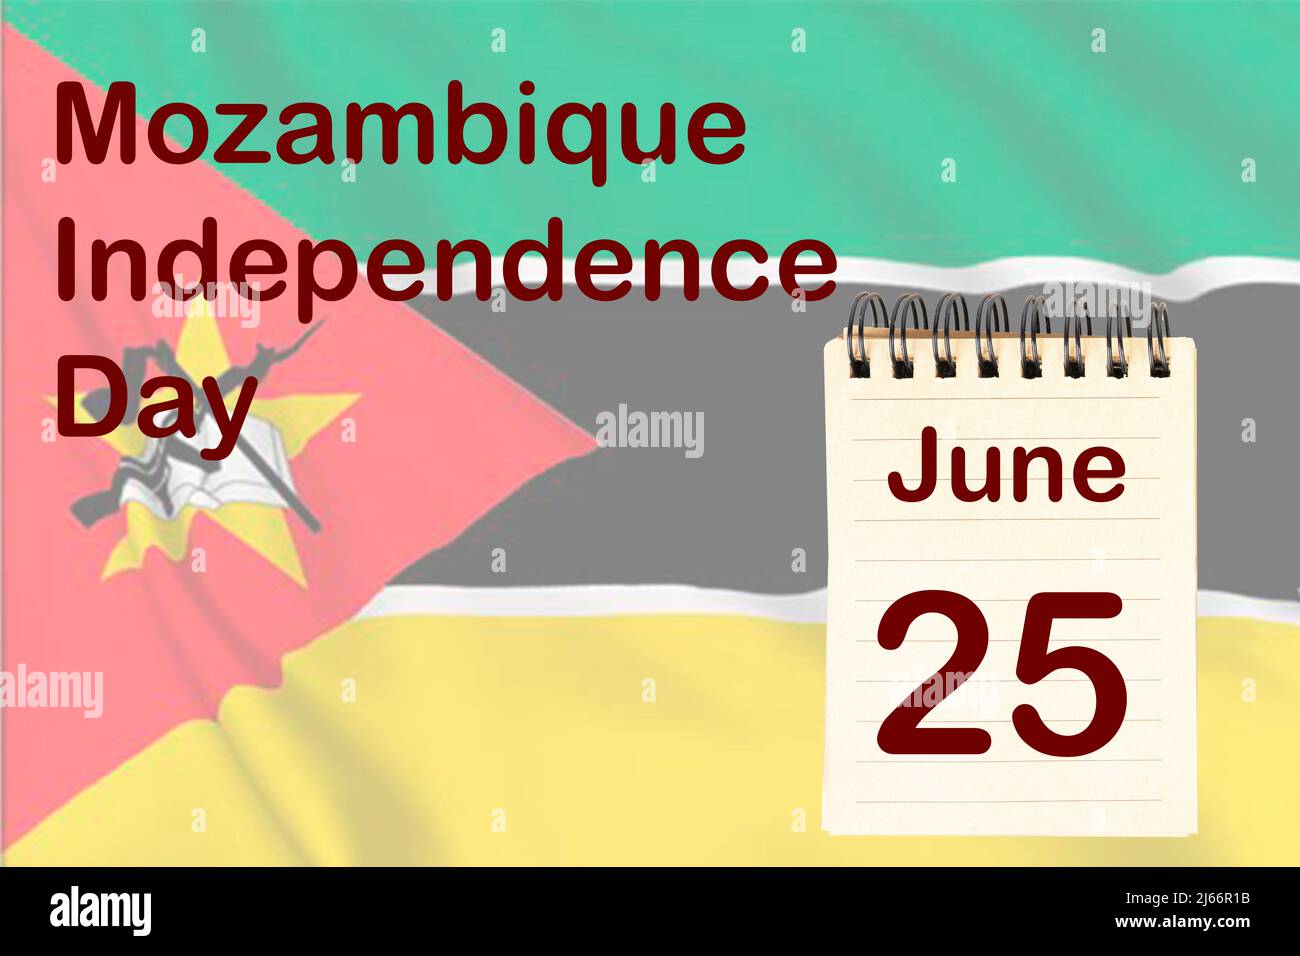 La celebración del Día de la Independencia de Mozambique con la bandera y el calendario que indica el 25 de junio Foto de stock